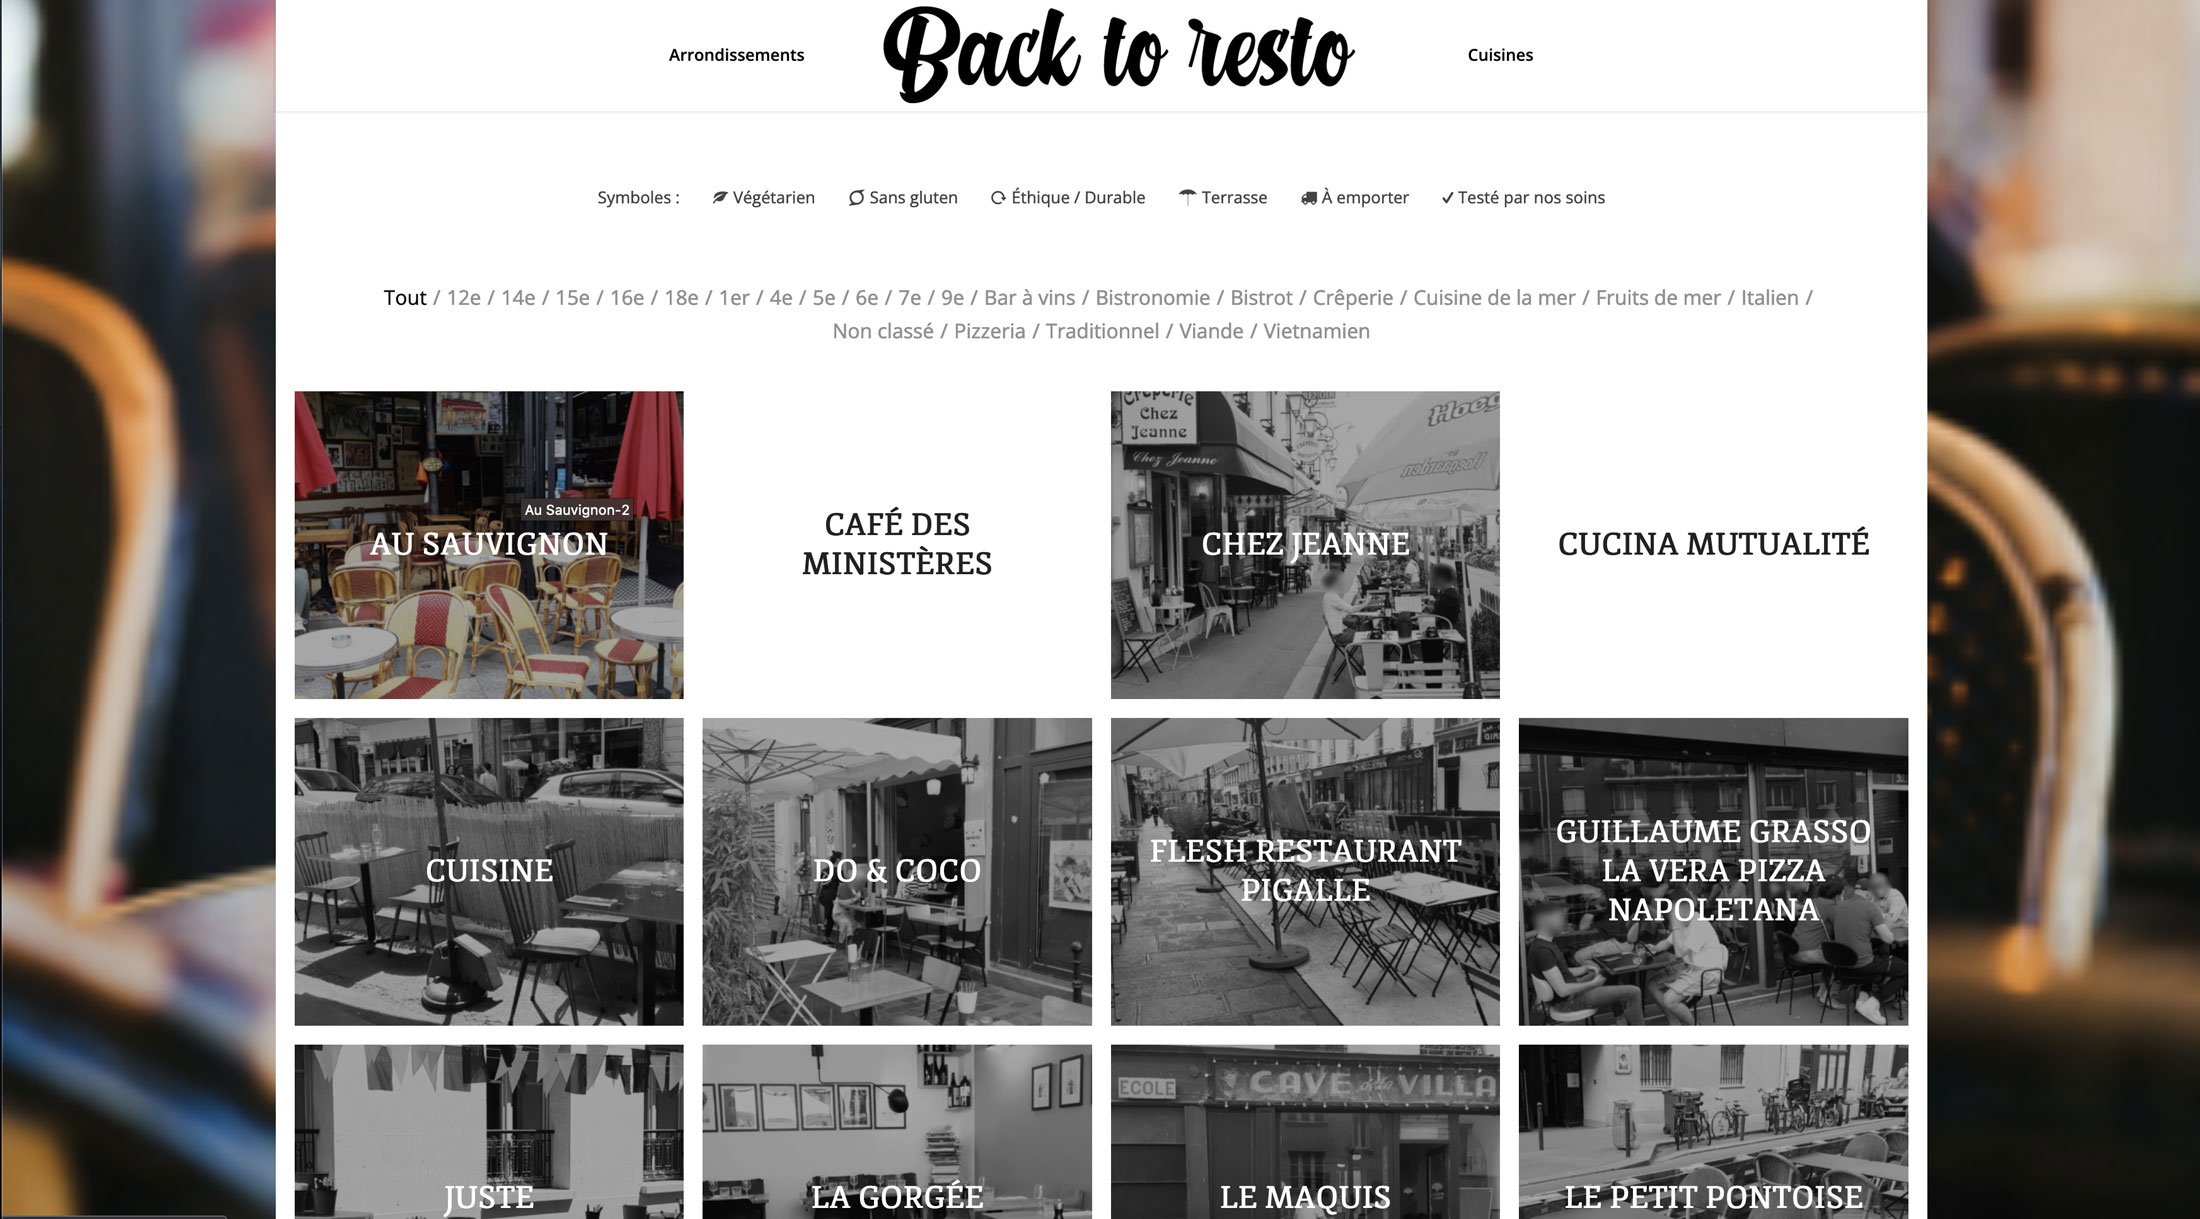 Image du site web réalisé par Nostromo, agence de communication, pour le projet Back to Resto